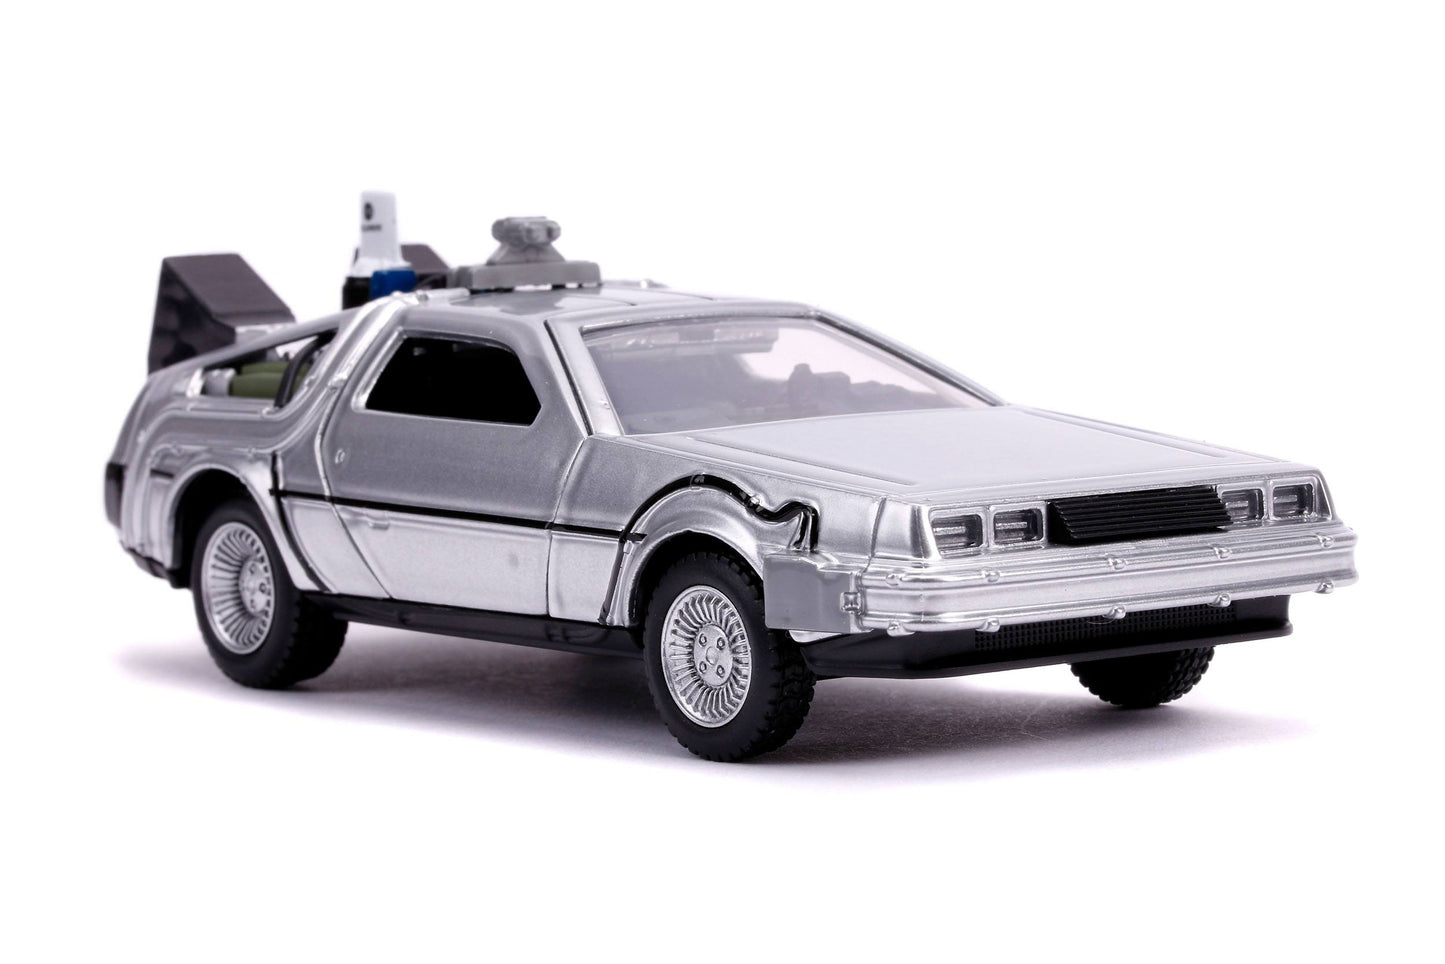 Back To The Future II - DeLorean Time Machine